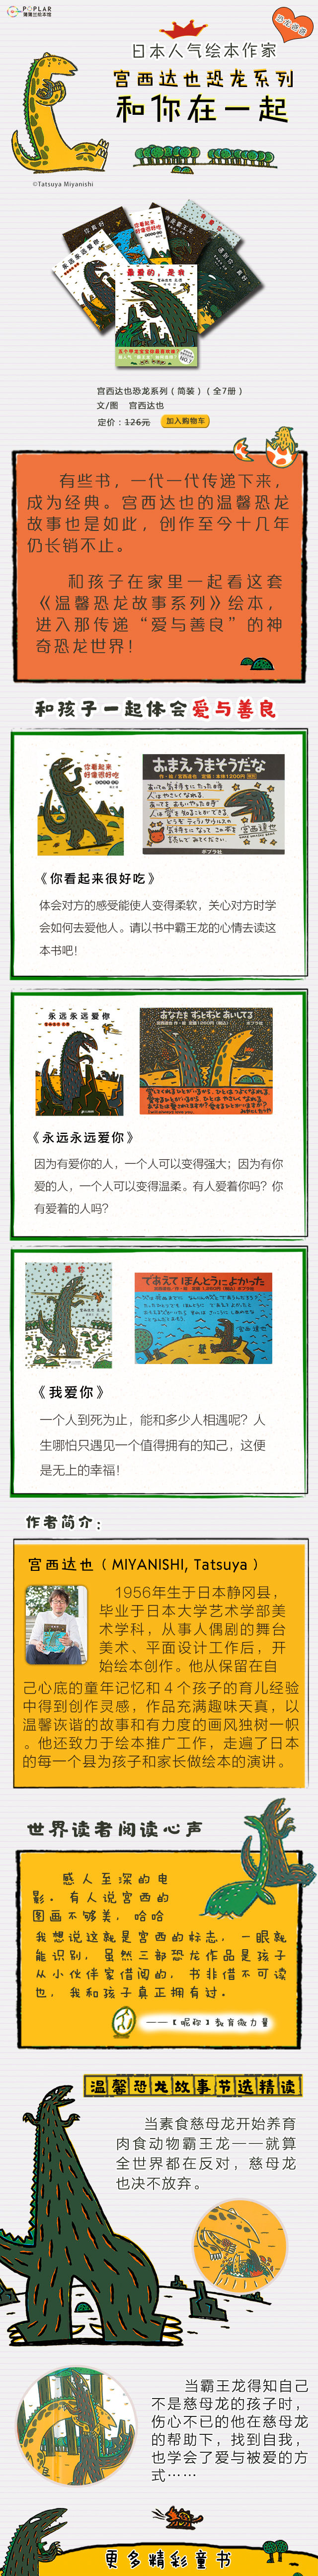 宮西達也恐竜絵本シリーズ (全7册)／JCCBOOKS中国書籍ネットショップ